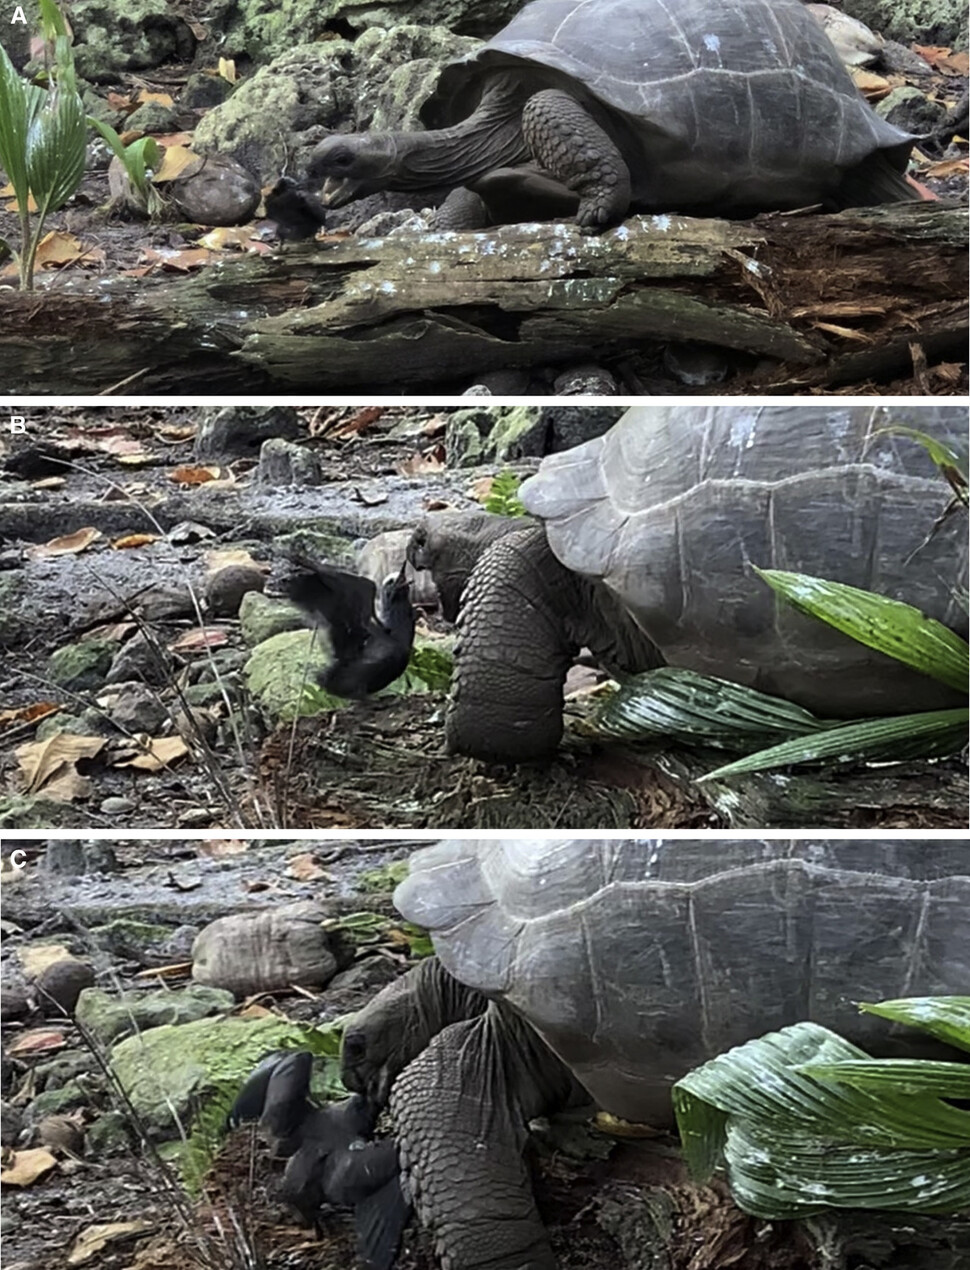 땅에 떨어진 제비갈매기 새끼는 거북이 다가와도 나무를 떠나지 않는다(A). 거북의 공격에 날개를 치고 부리로 쪼며 맞서지만(B) 끝내 거북의 먹이가 된다(C). 애너 조라 외 (2021) ‘커런스 바이올로지’ 제공.